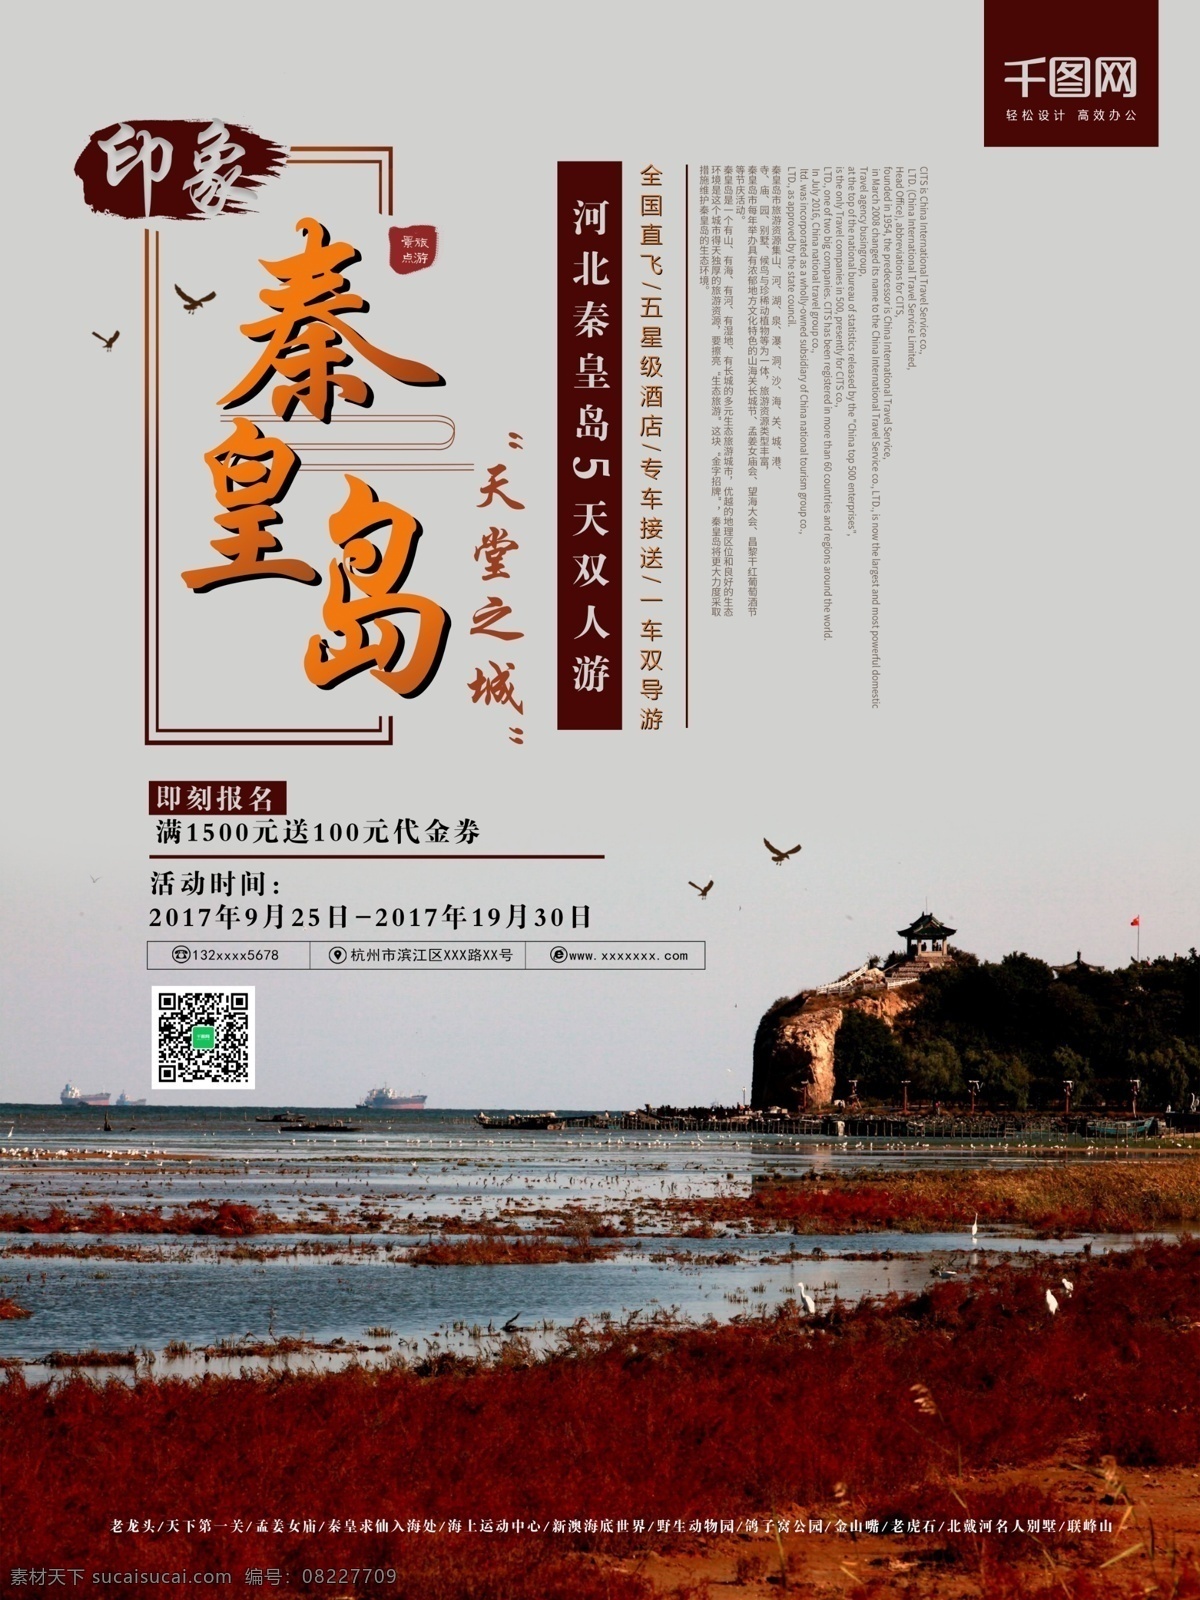 秦皇岛 旅游 海报 河北 中国风 风景 旅行社